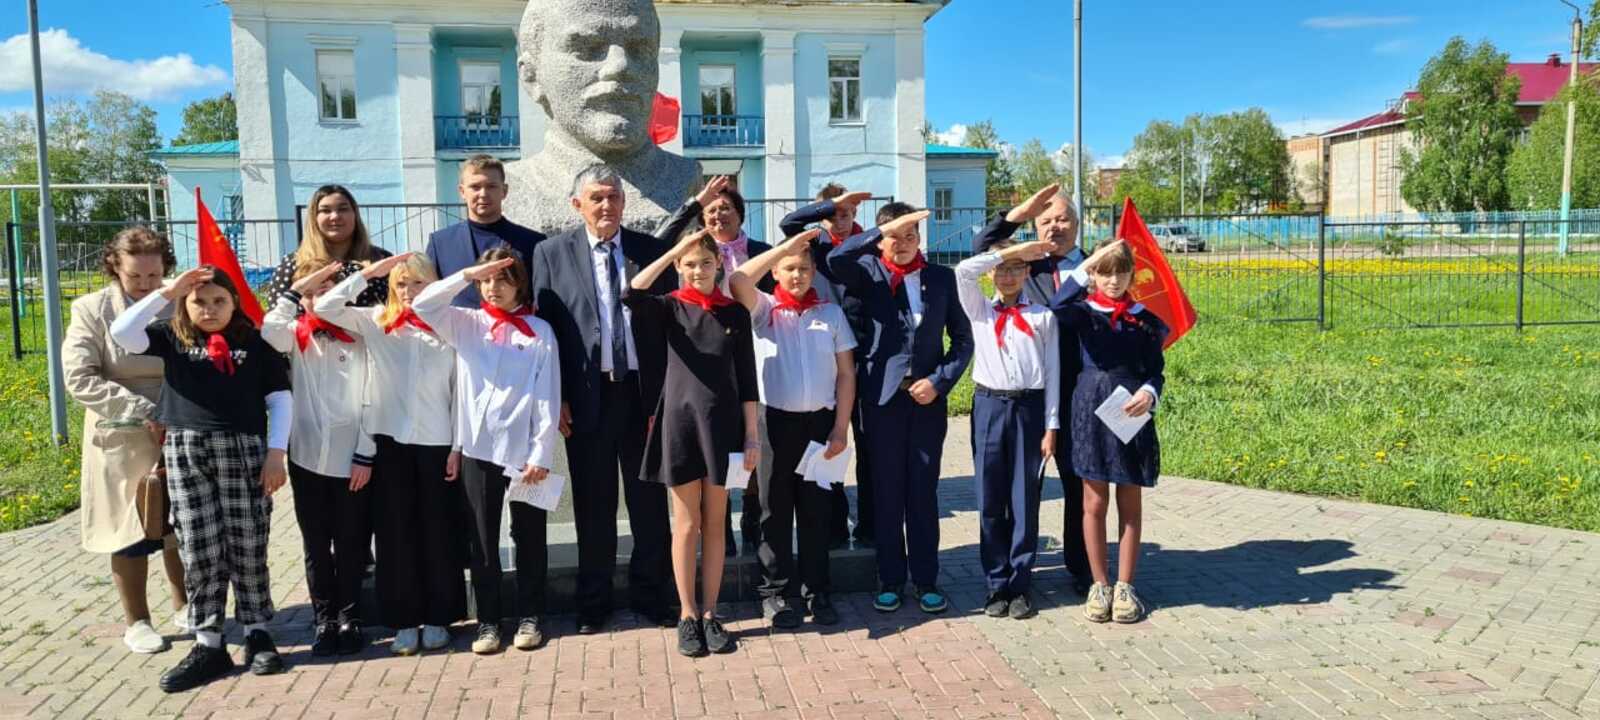 Накануне 100-летия всесоюзной организации им В.И.Ленина райком КПРФ организовал прием в пионеры, который состоялся 18 мая у бюста В.И.Ленина